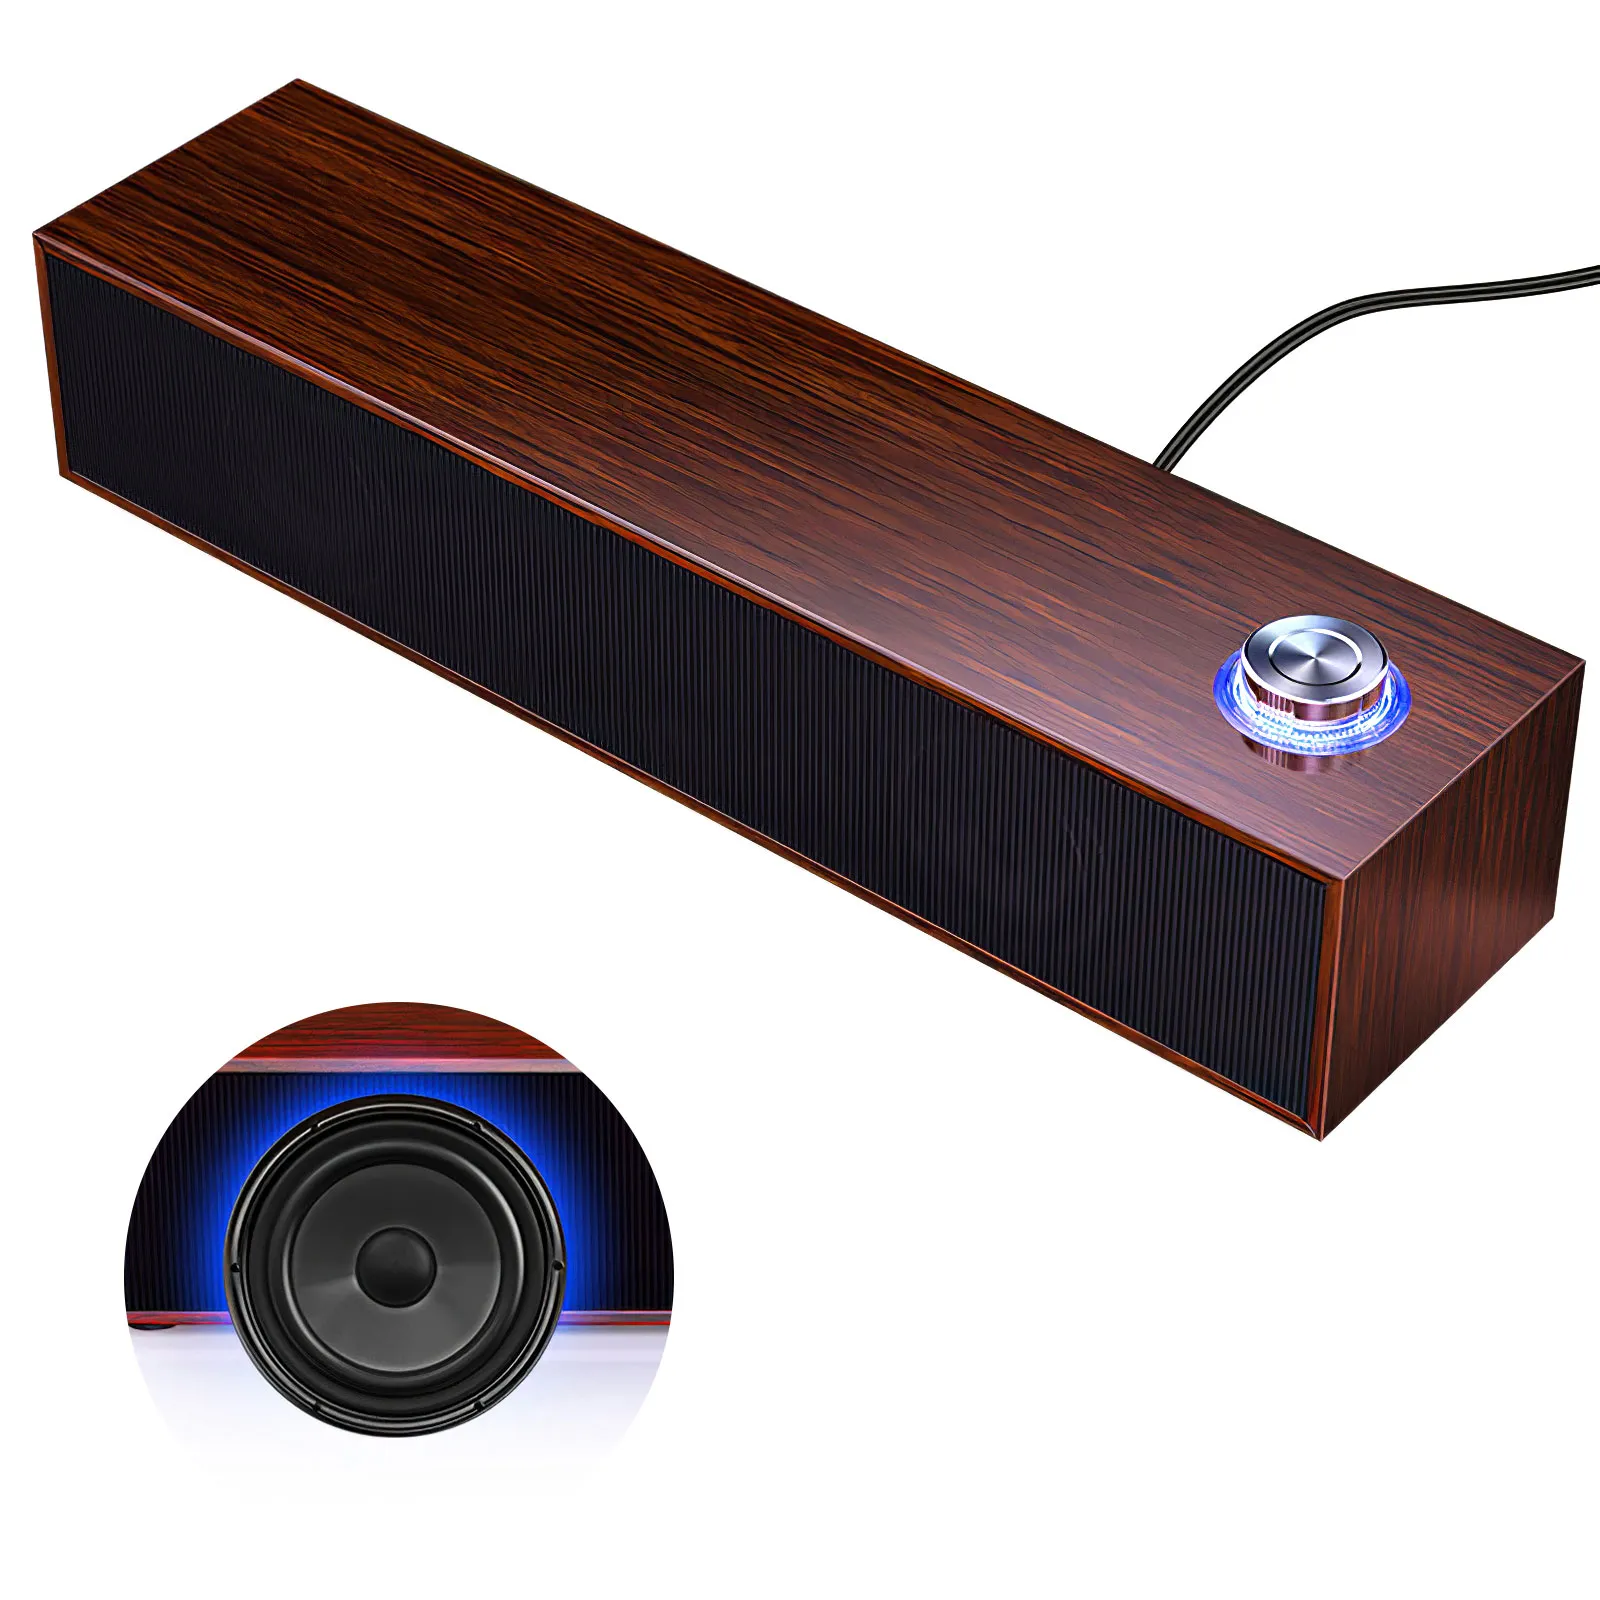 Haut-parleur en bois, barre de son Surround stéréo, barre de son stéréo de haute qualité, Bluetooth 5.0, filaire, pour ordinateur PC